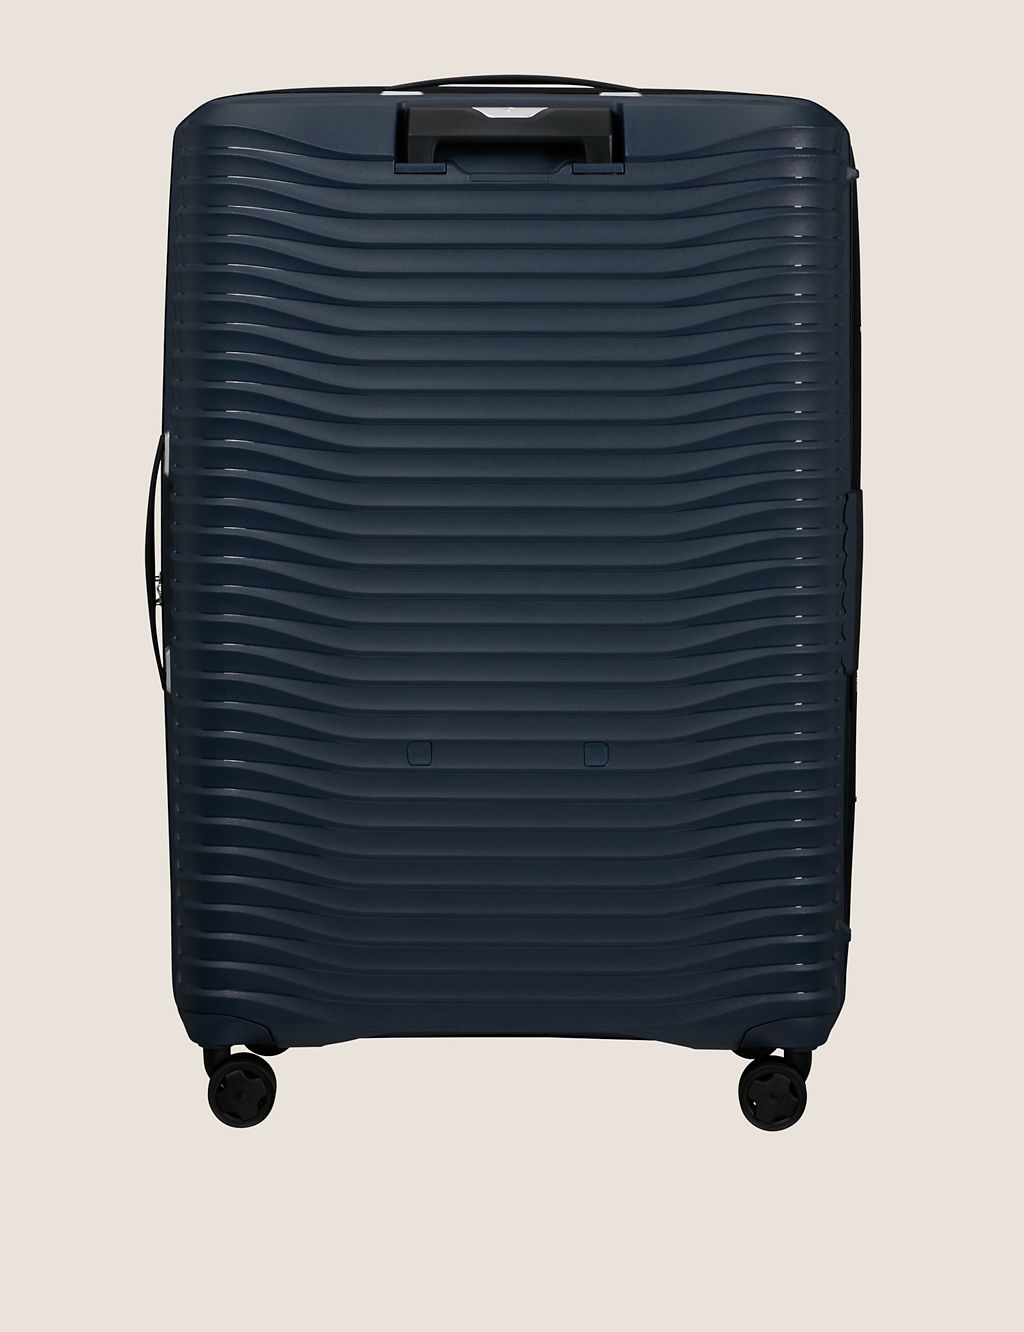 Upscape 4 Wheel Hard Shell Extra Large Suitcase 1 of 4